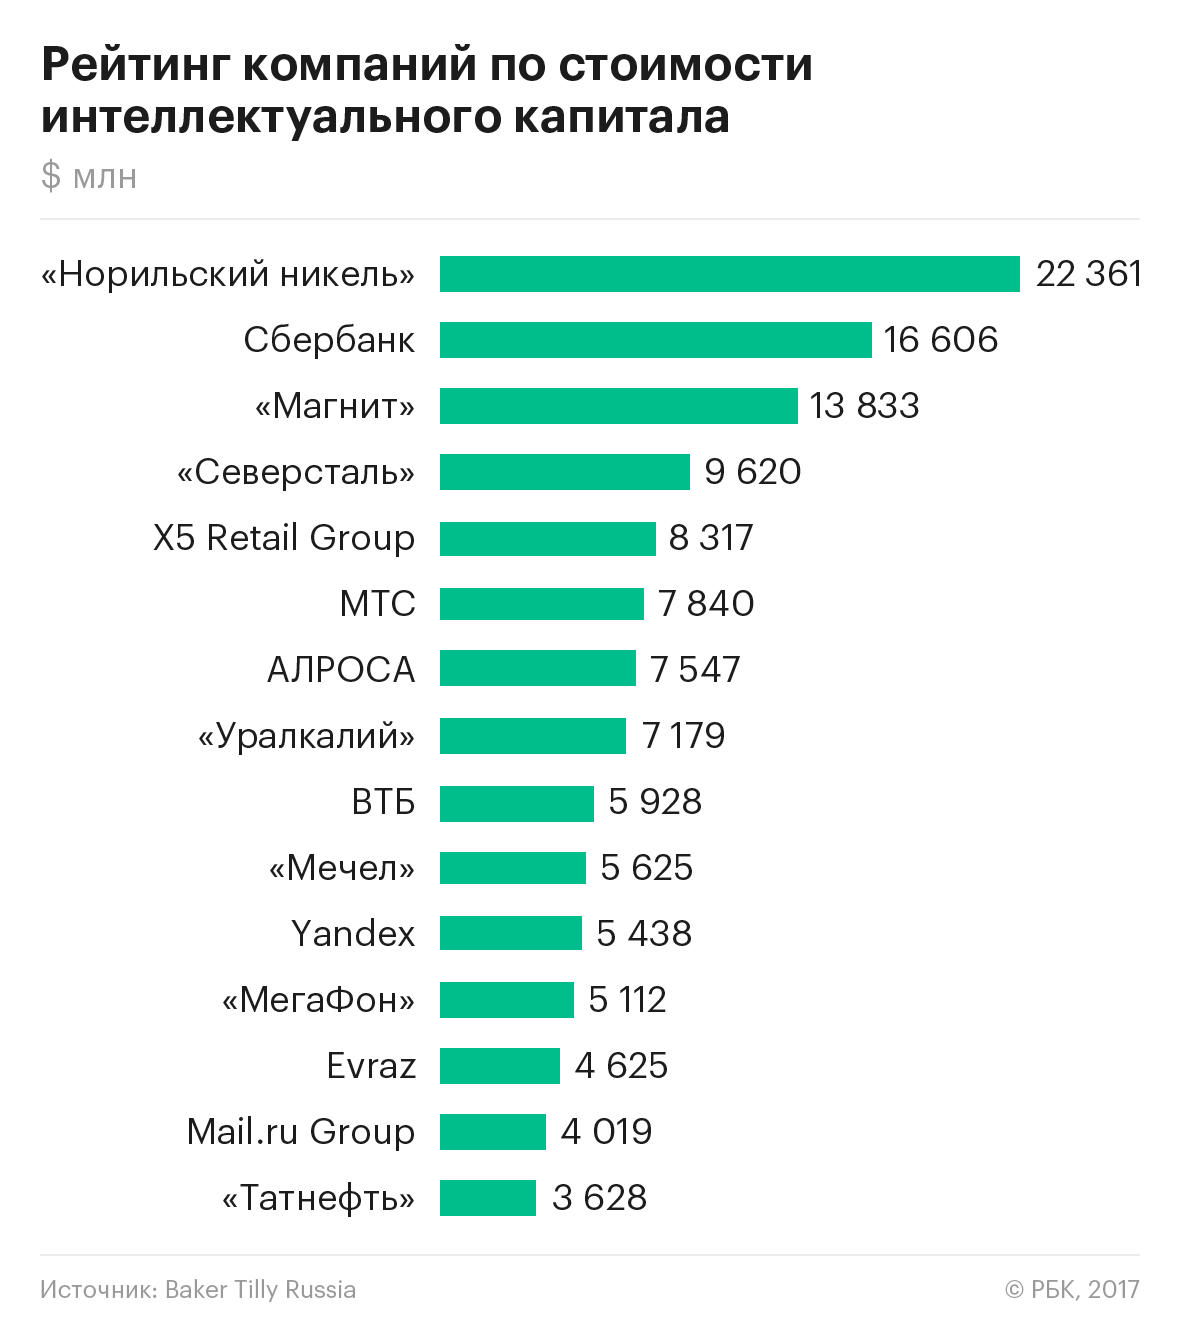 Эксперты составили рейтинг самых интеллектуальных компаний России